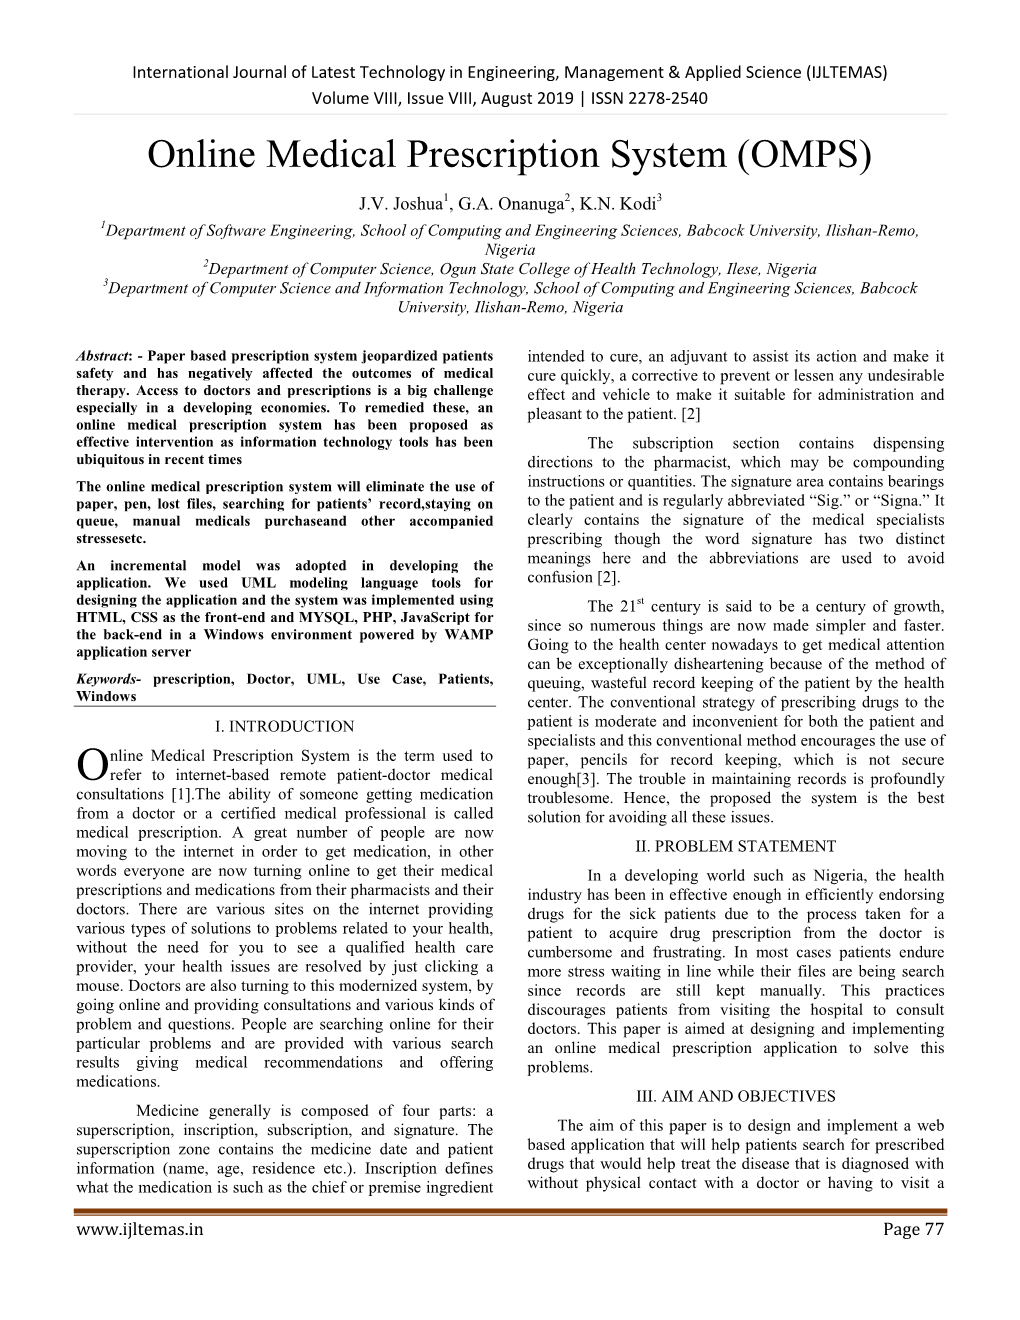 Online Medical Prescription System (OMPS)